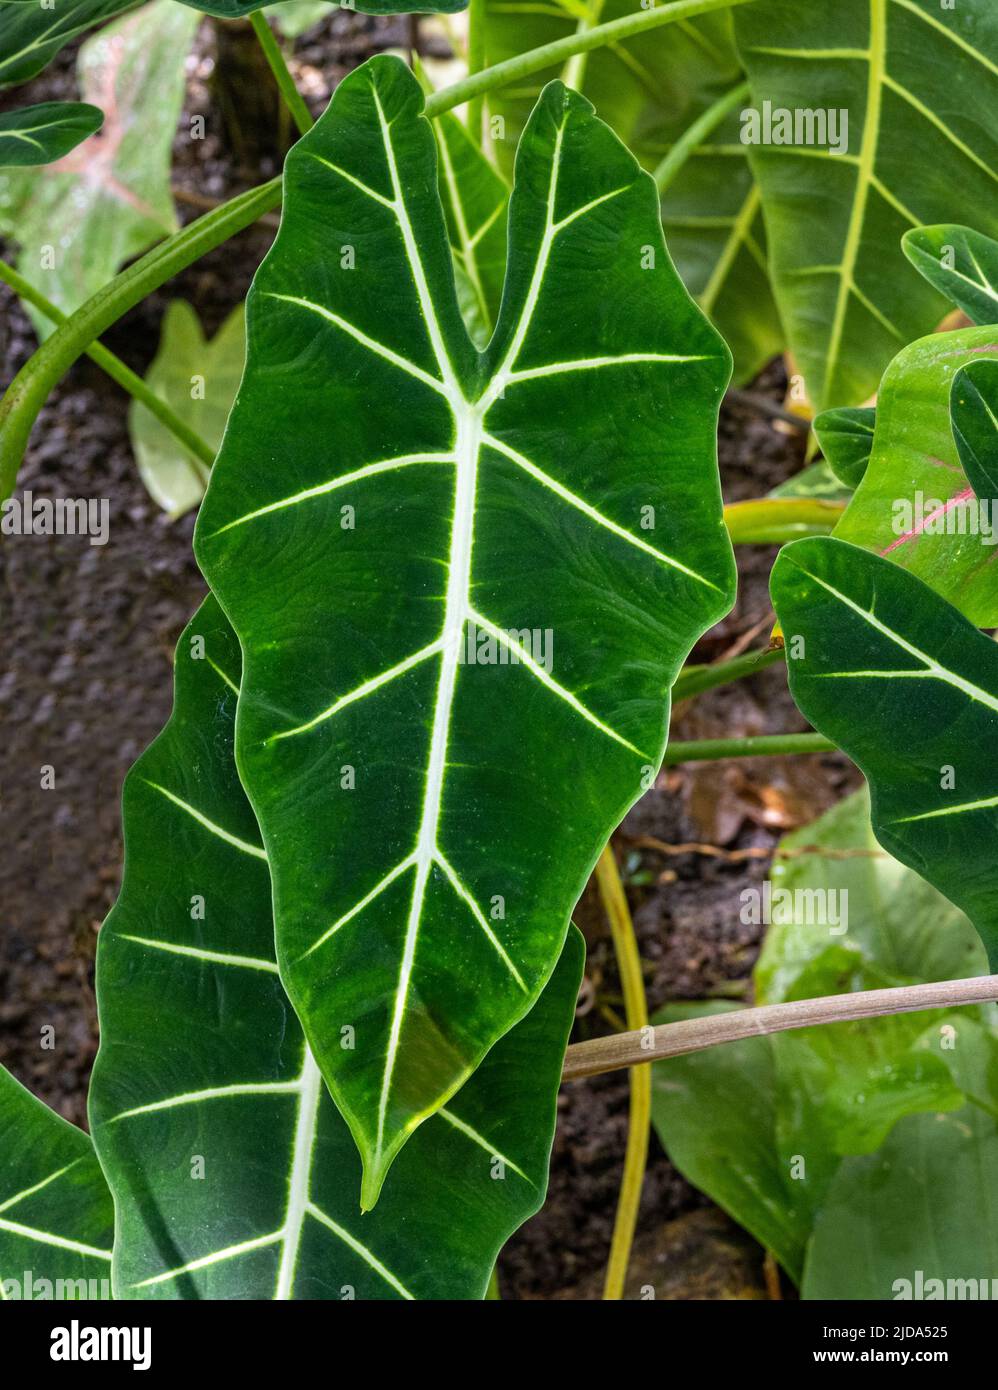 Alocasia micholitziana o taro de terciopelo verde (familia Araceae). Distribución geográfica Es endémica de la isla de Luzon en Filipinas Foto de stock